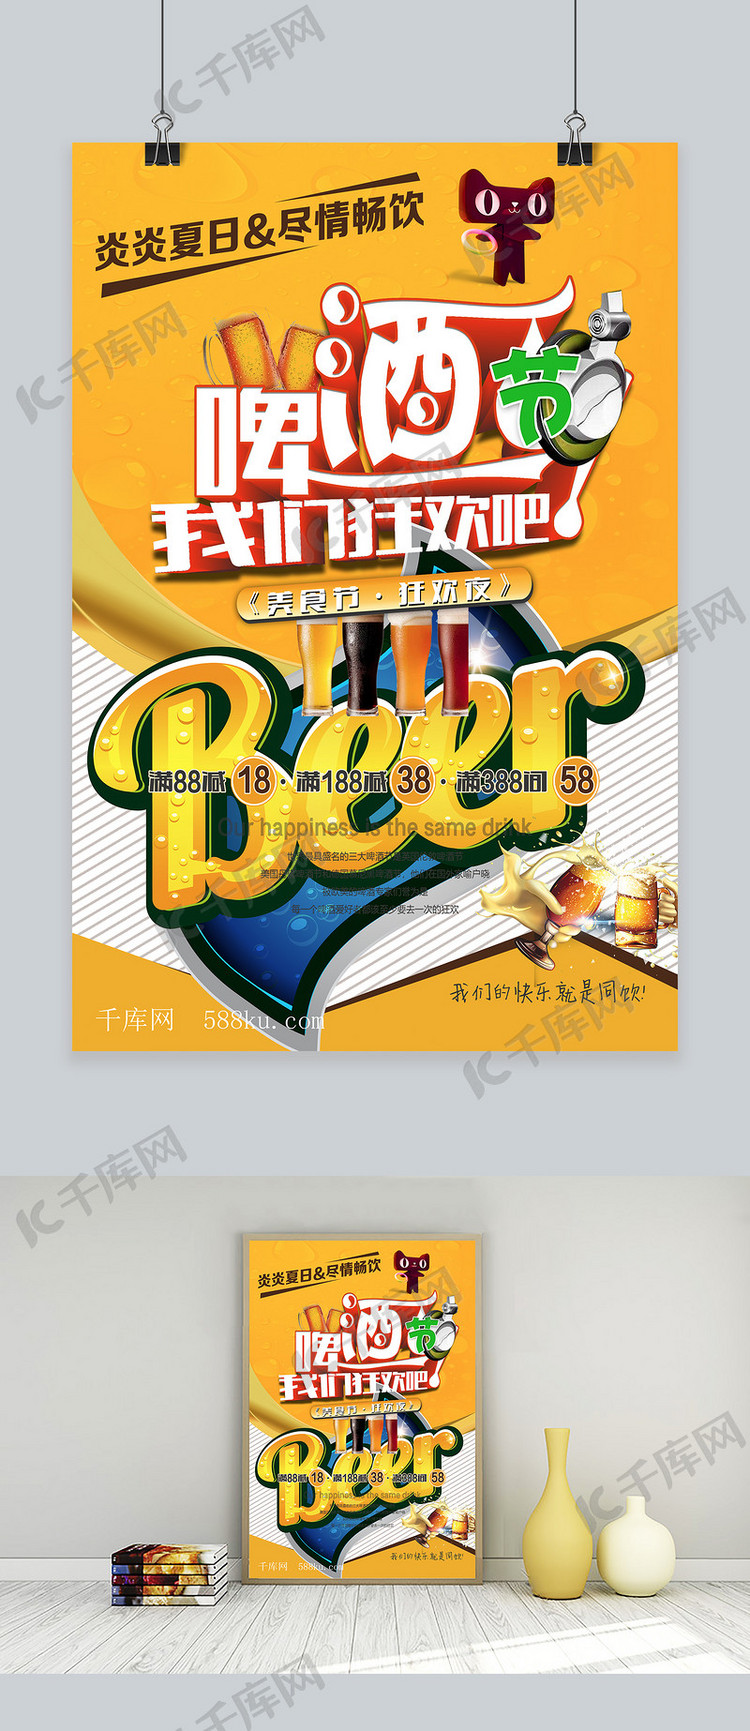 千库原创天猫啤酒节淡雅简约海报